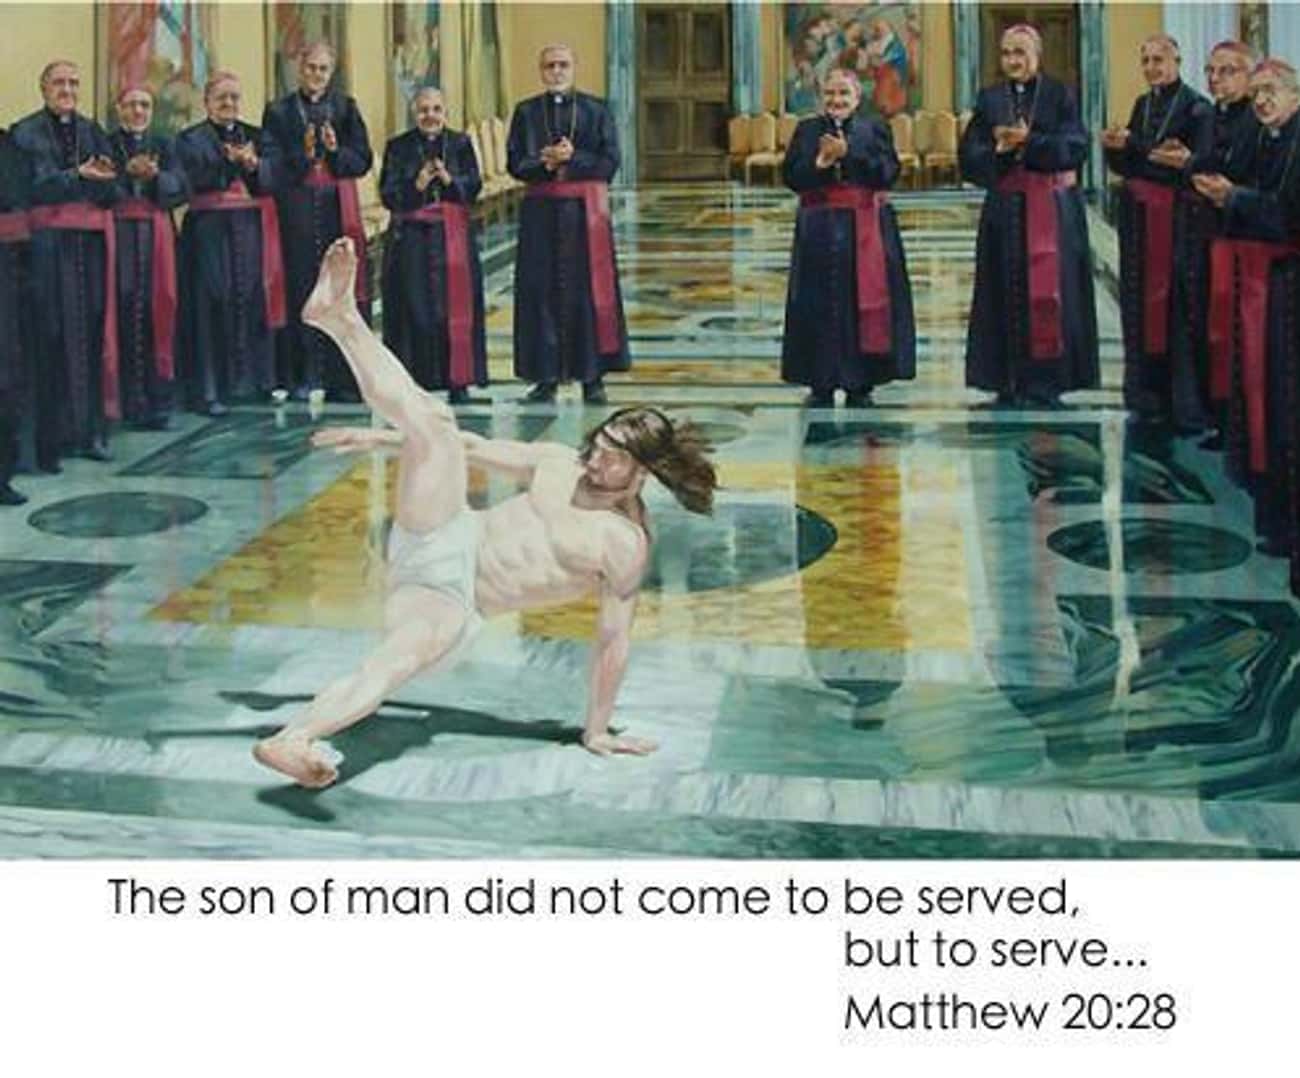 Jesus Makes Break-Dancing Look Easy